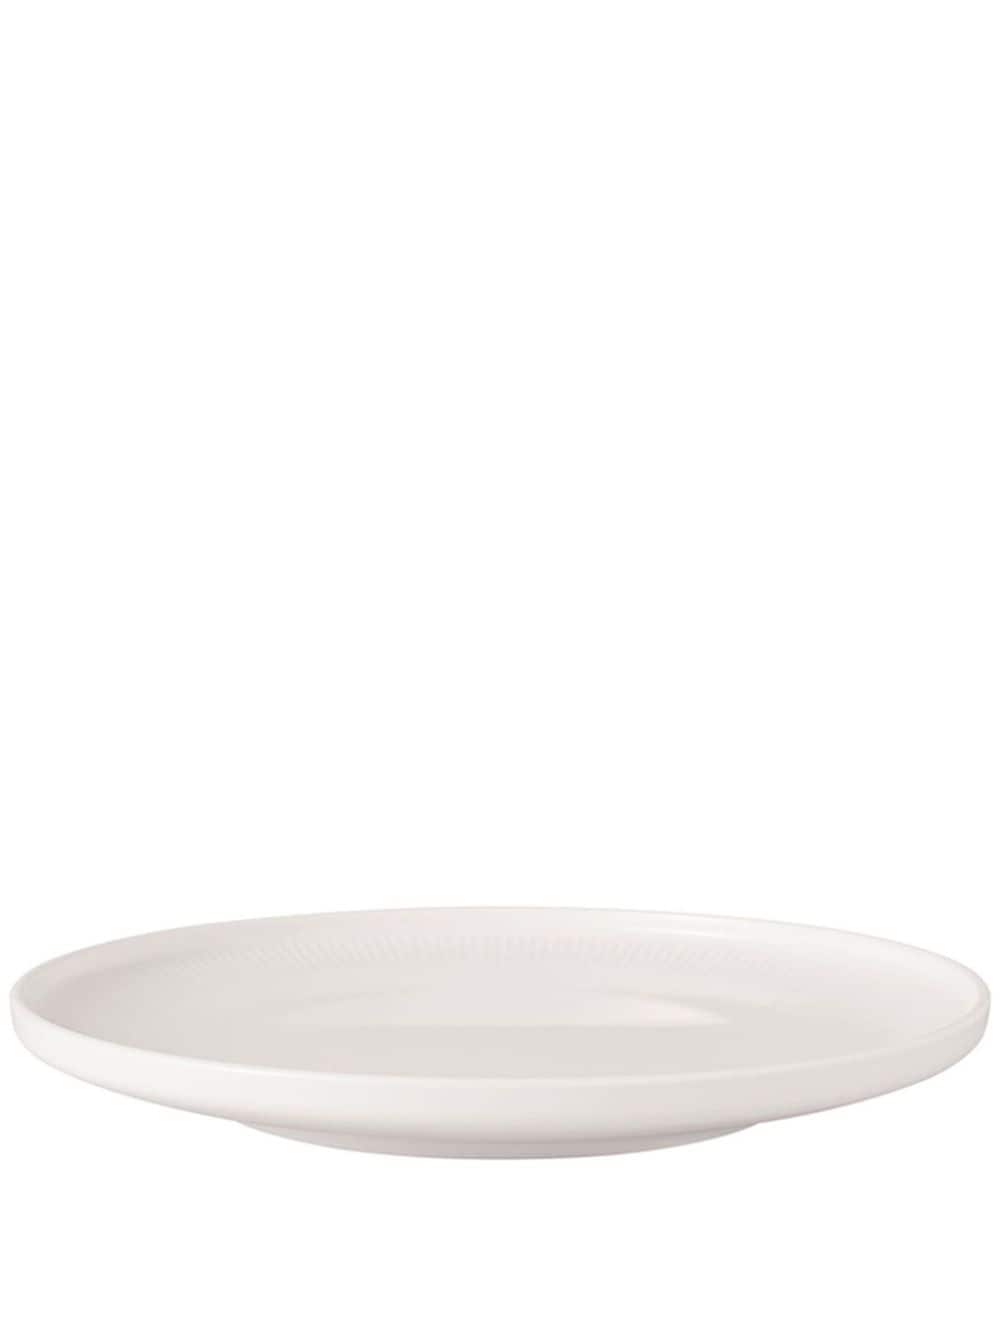 Villeroy & Boch Afina dessert plate (22 cm) - White von Villeroy & Boch